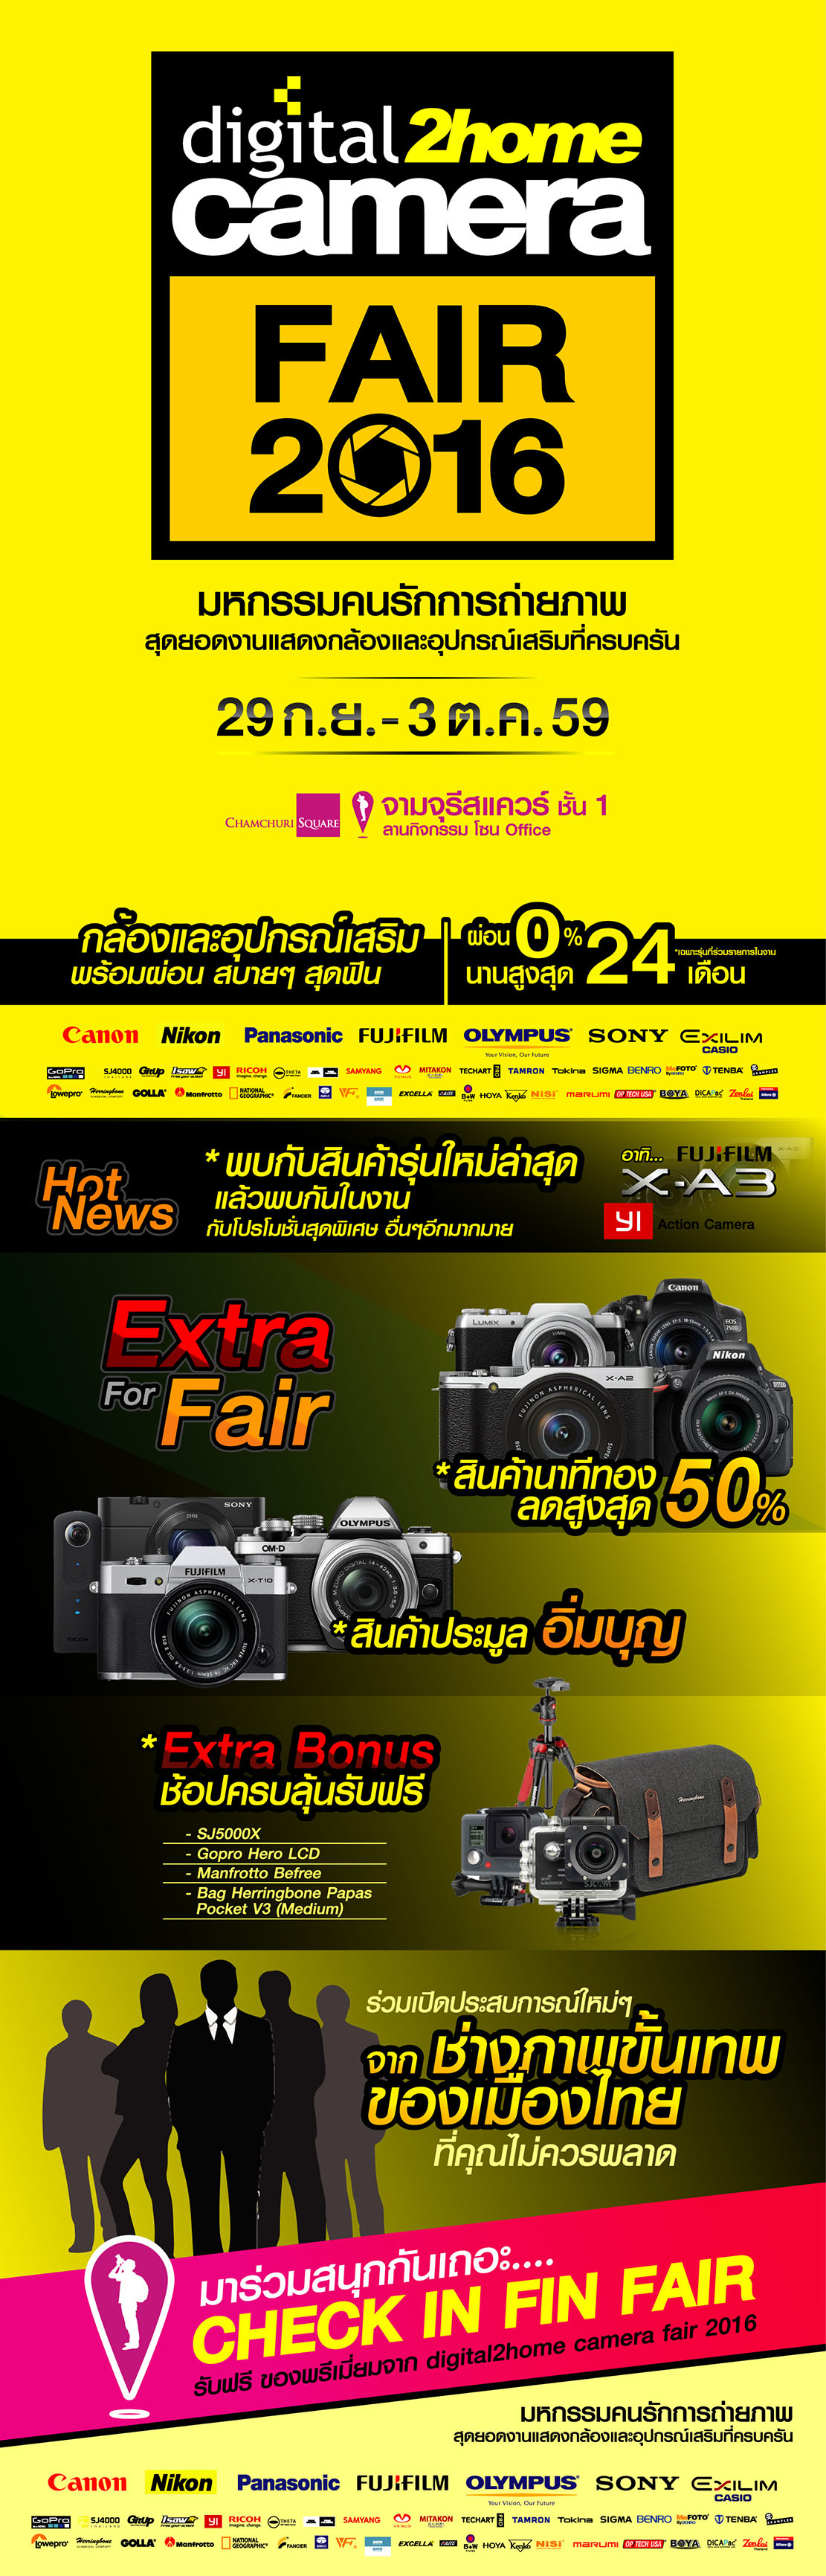 digital2home-camera-fair-2-750x2338-%e0%b9%81%e0%b8%81%e0%b9%89%e0%b9%84%e0%b8%82